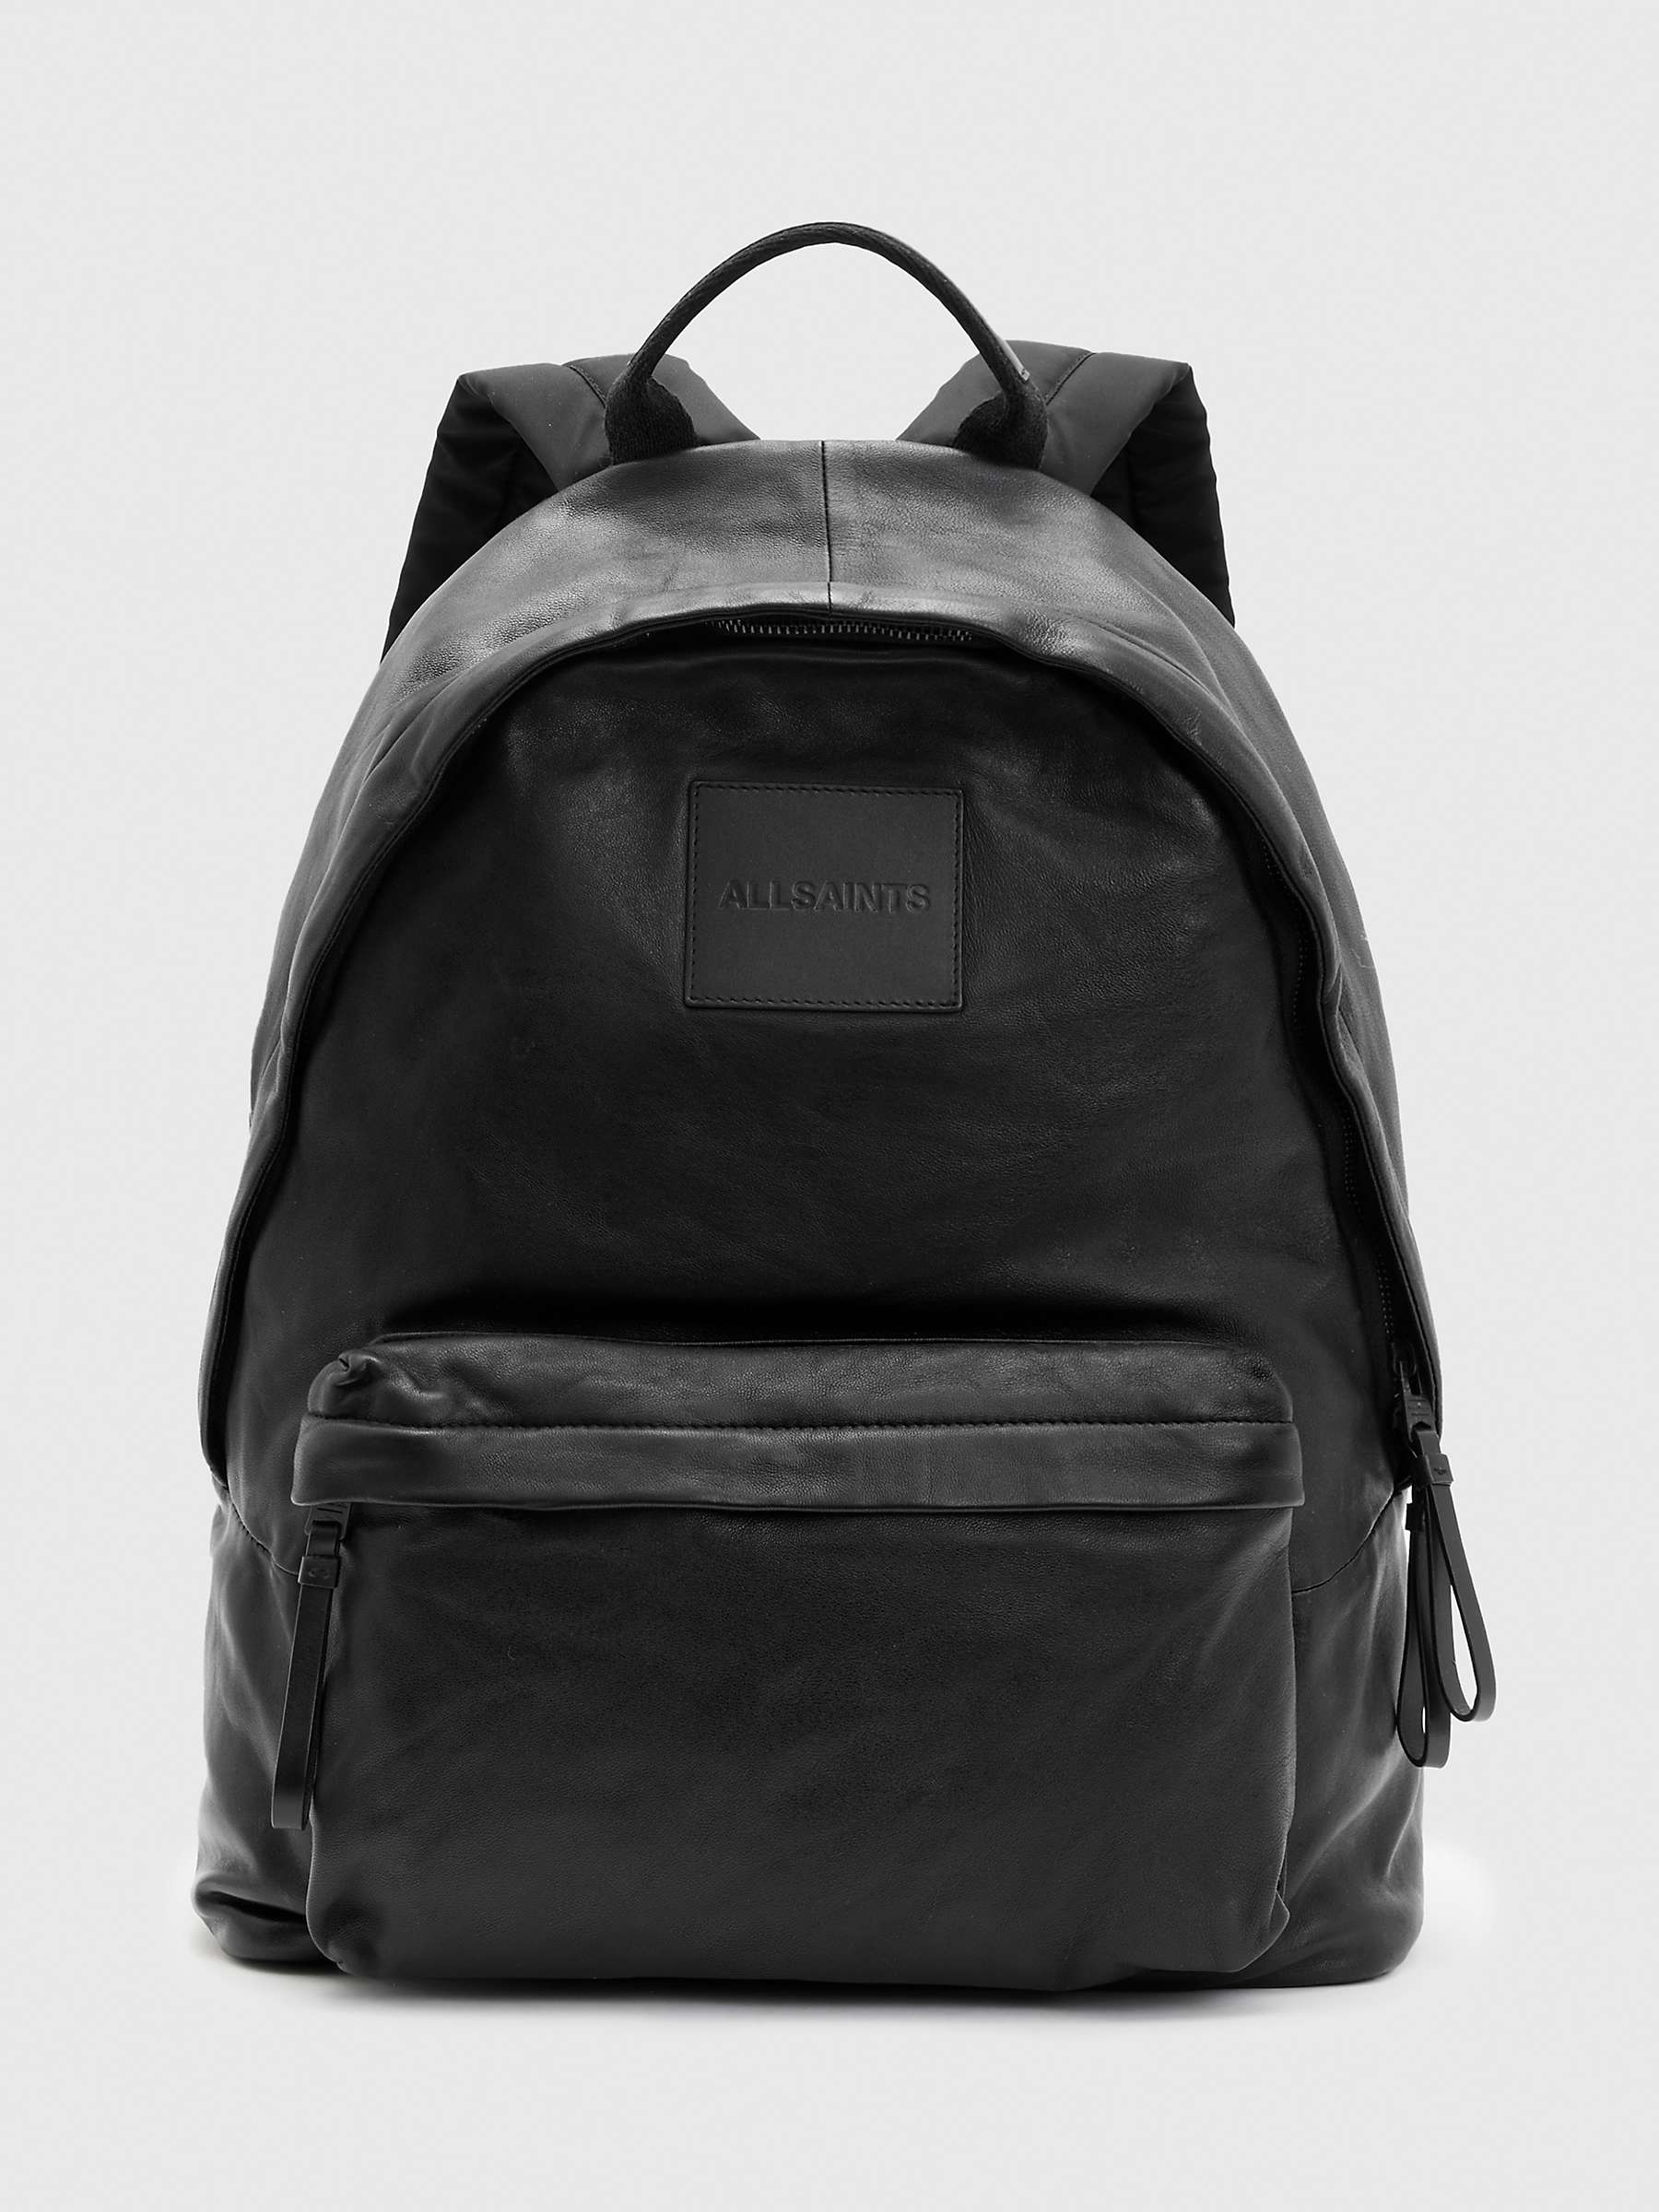 Buy AllSaints Carabiner Leather Backpack, Black Online at johnlewis.com